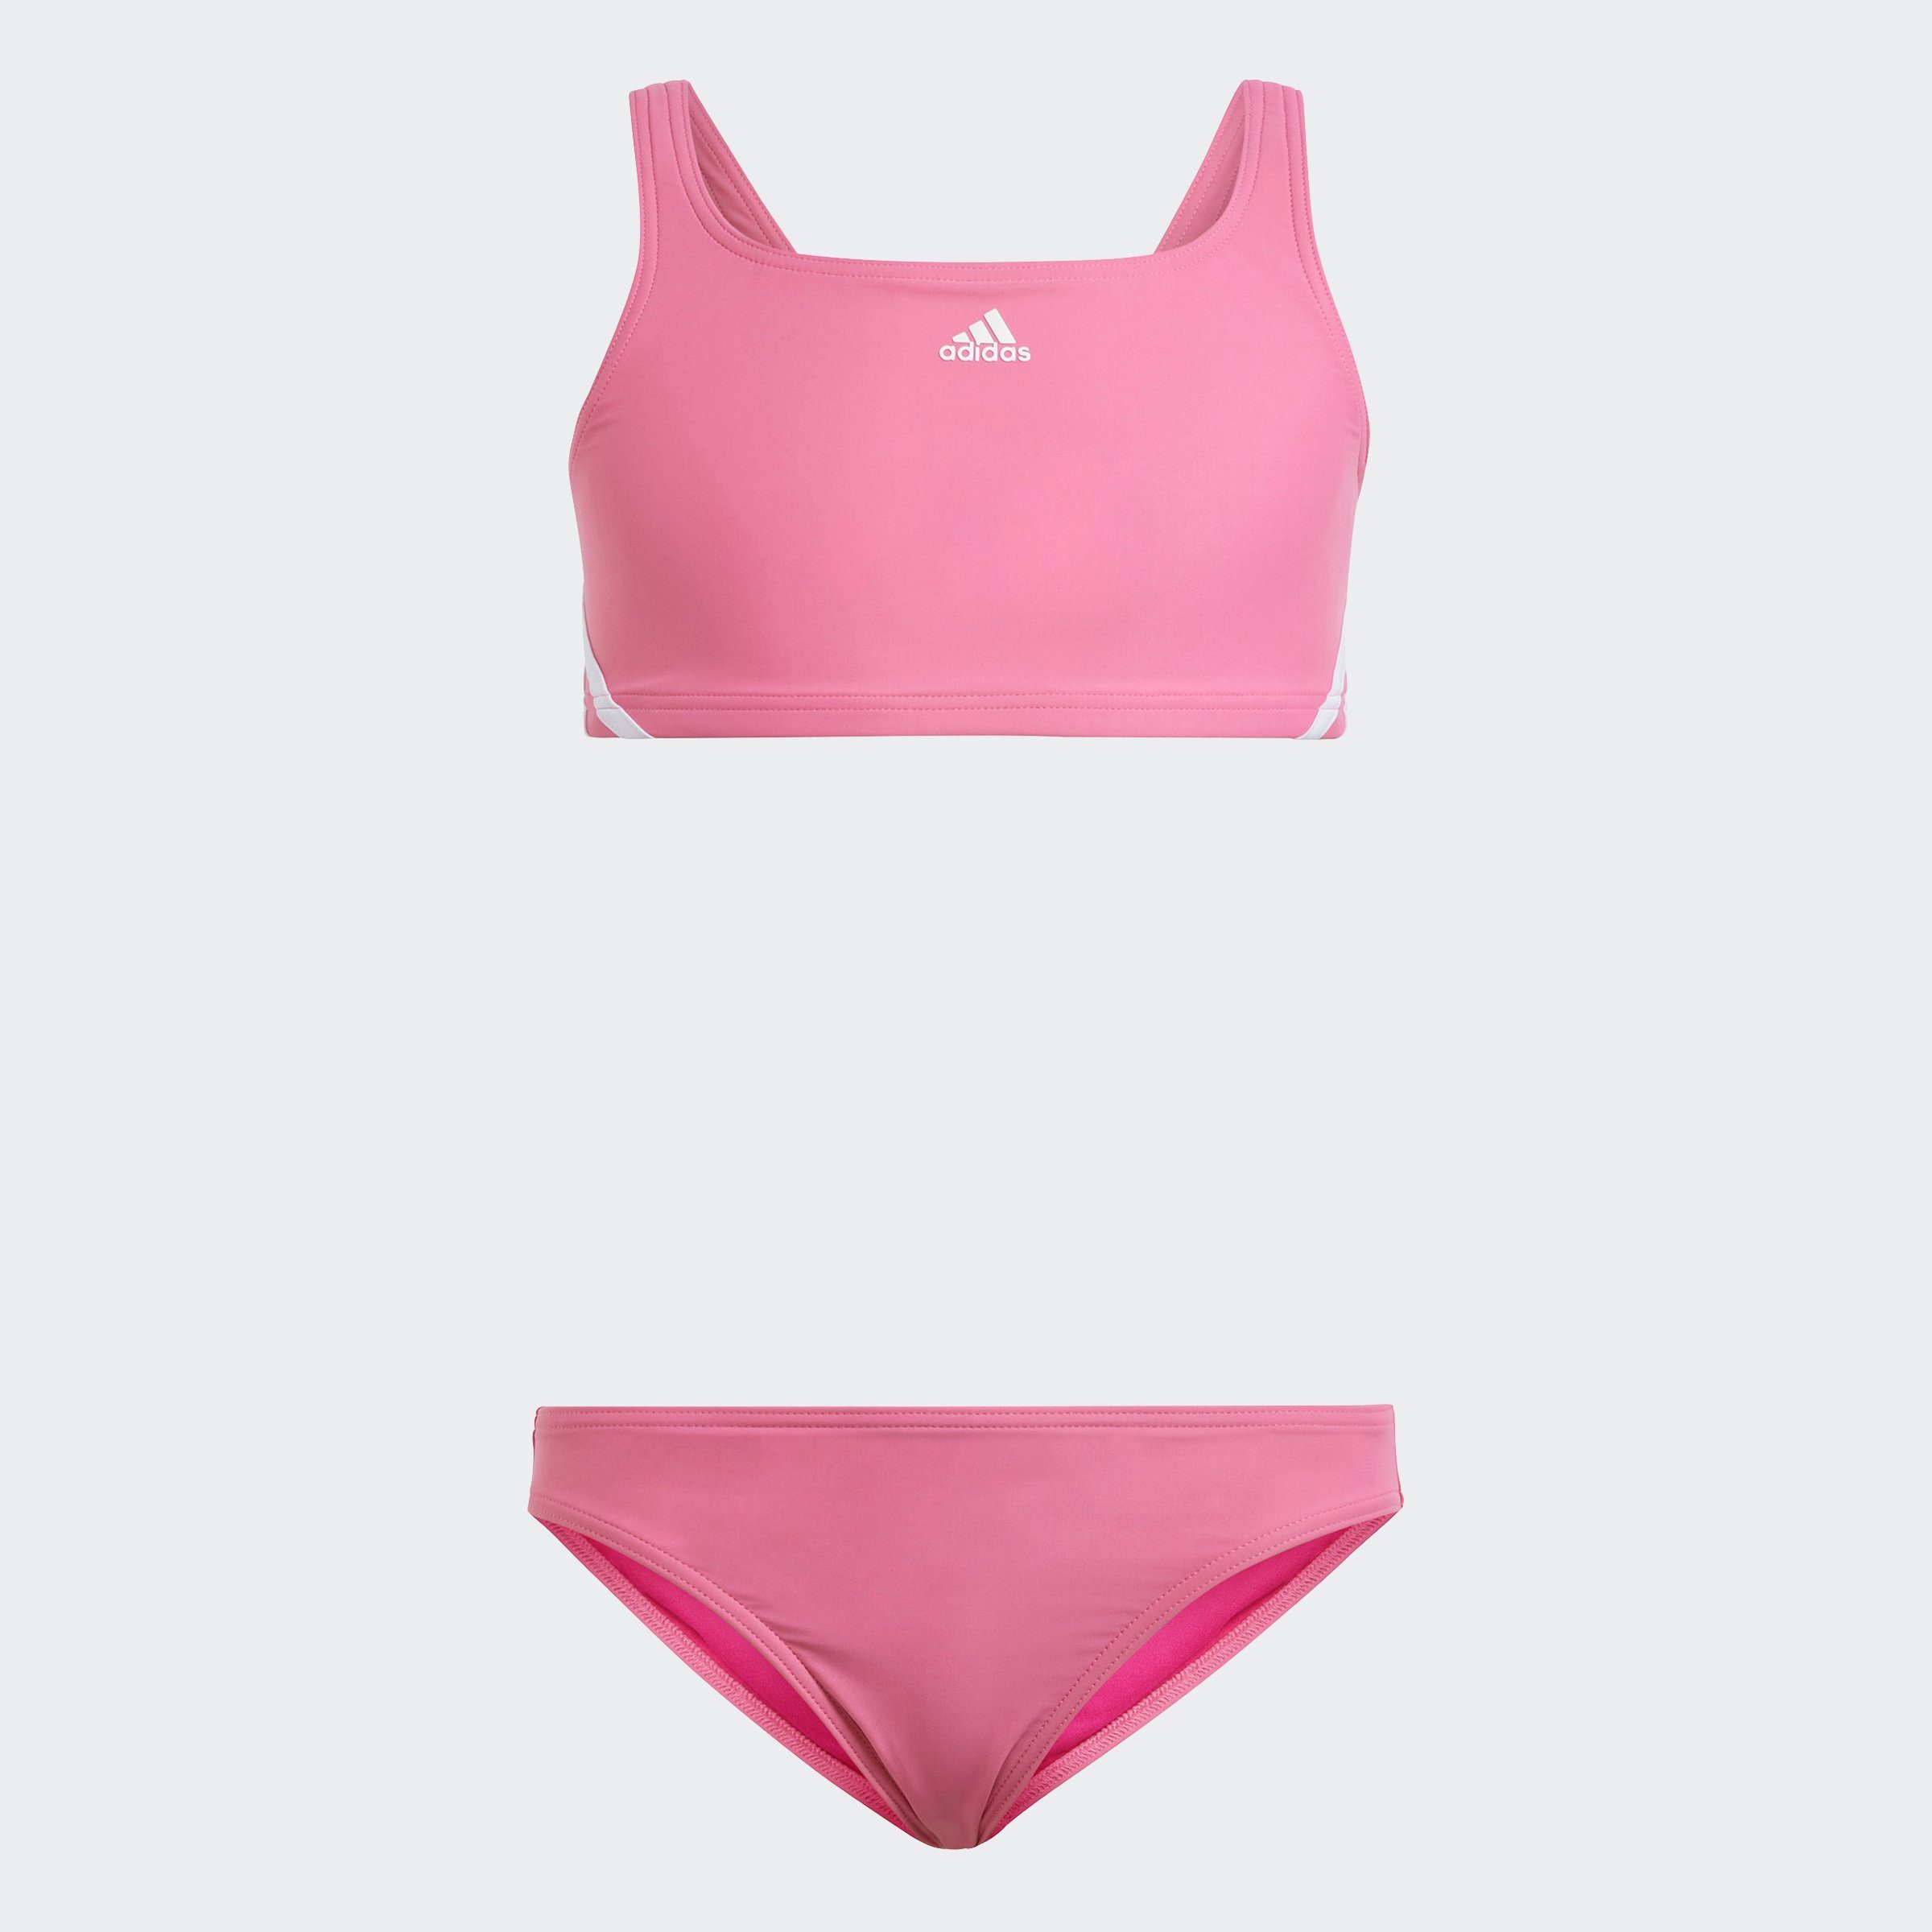 adidas Performance Bustier-Bikini 3STREIFEN BIKINI Pink Fusion / White